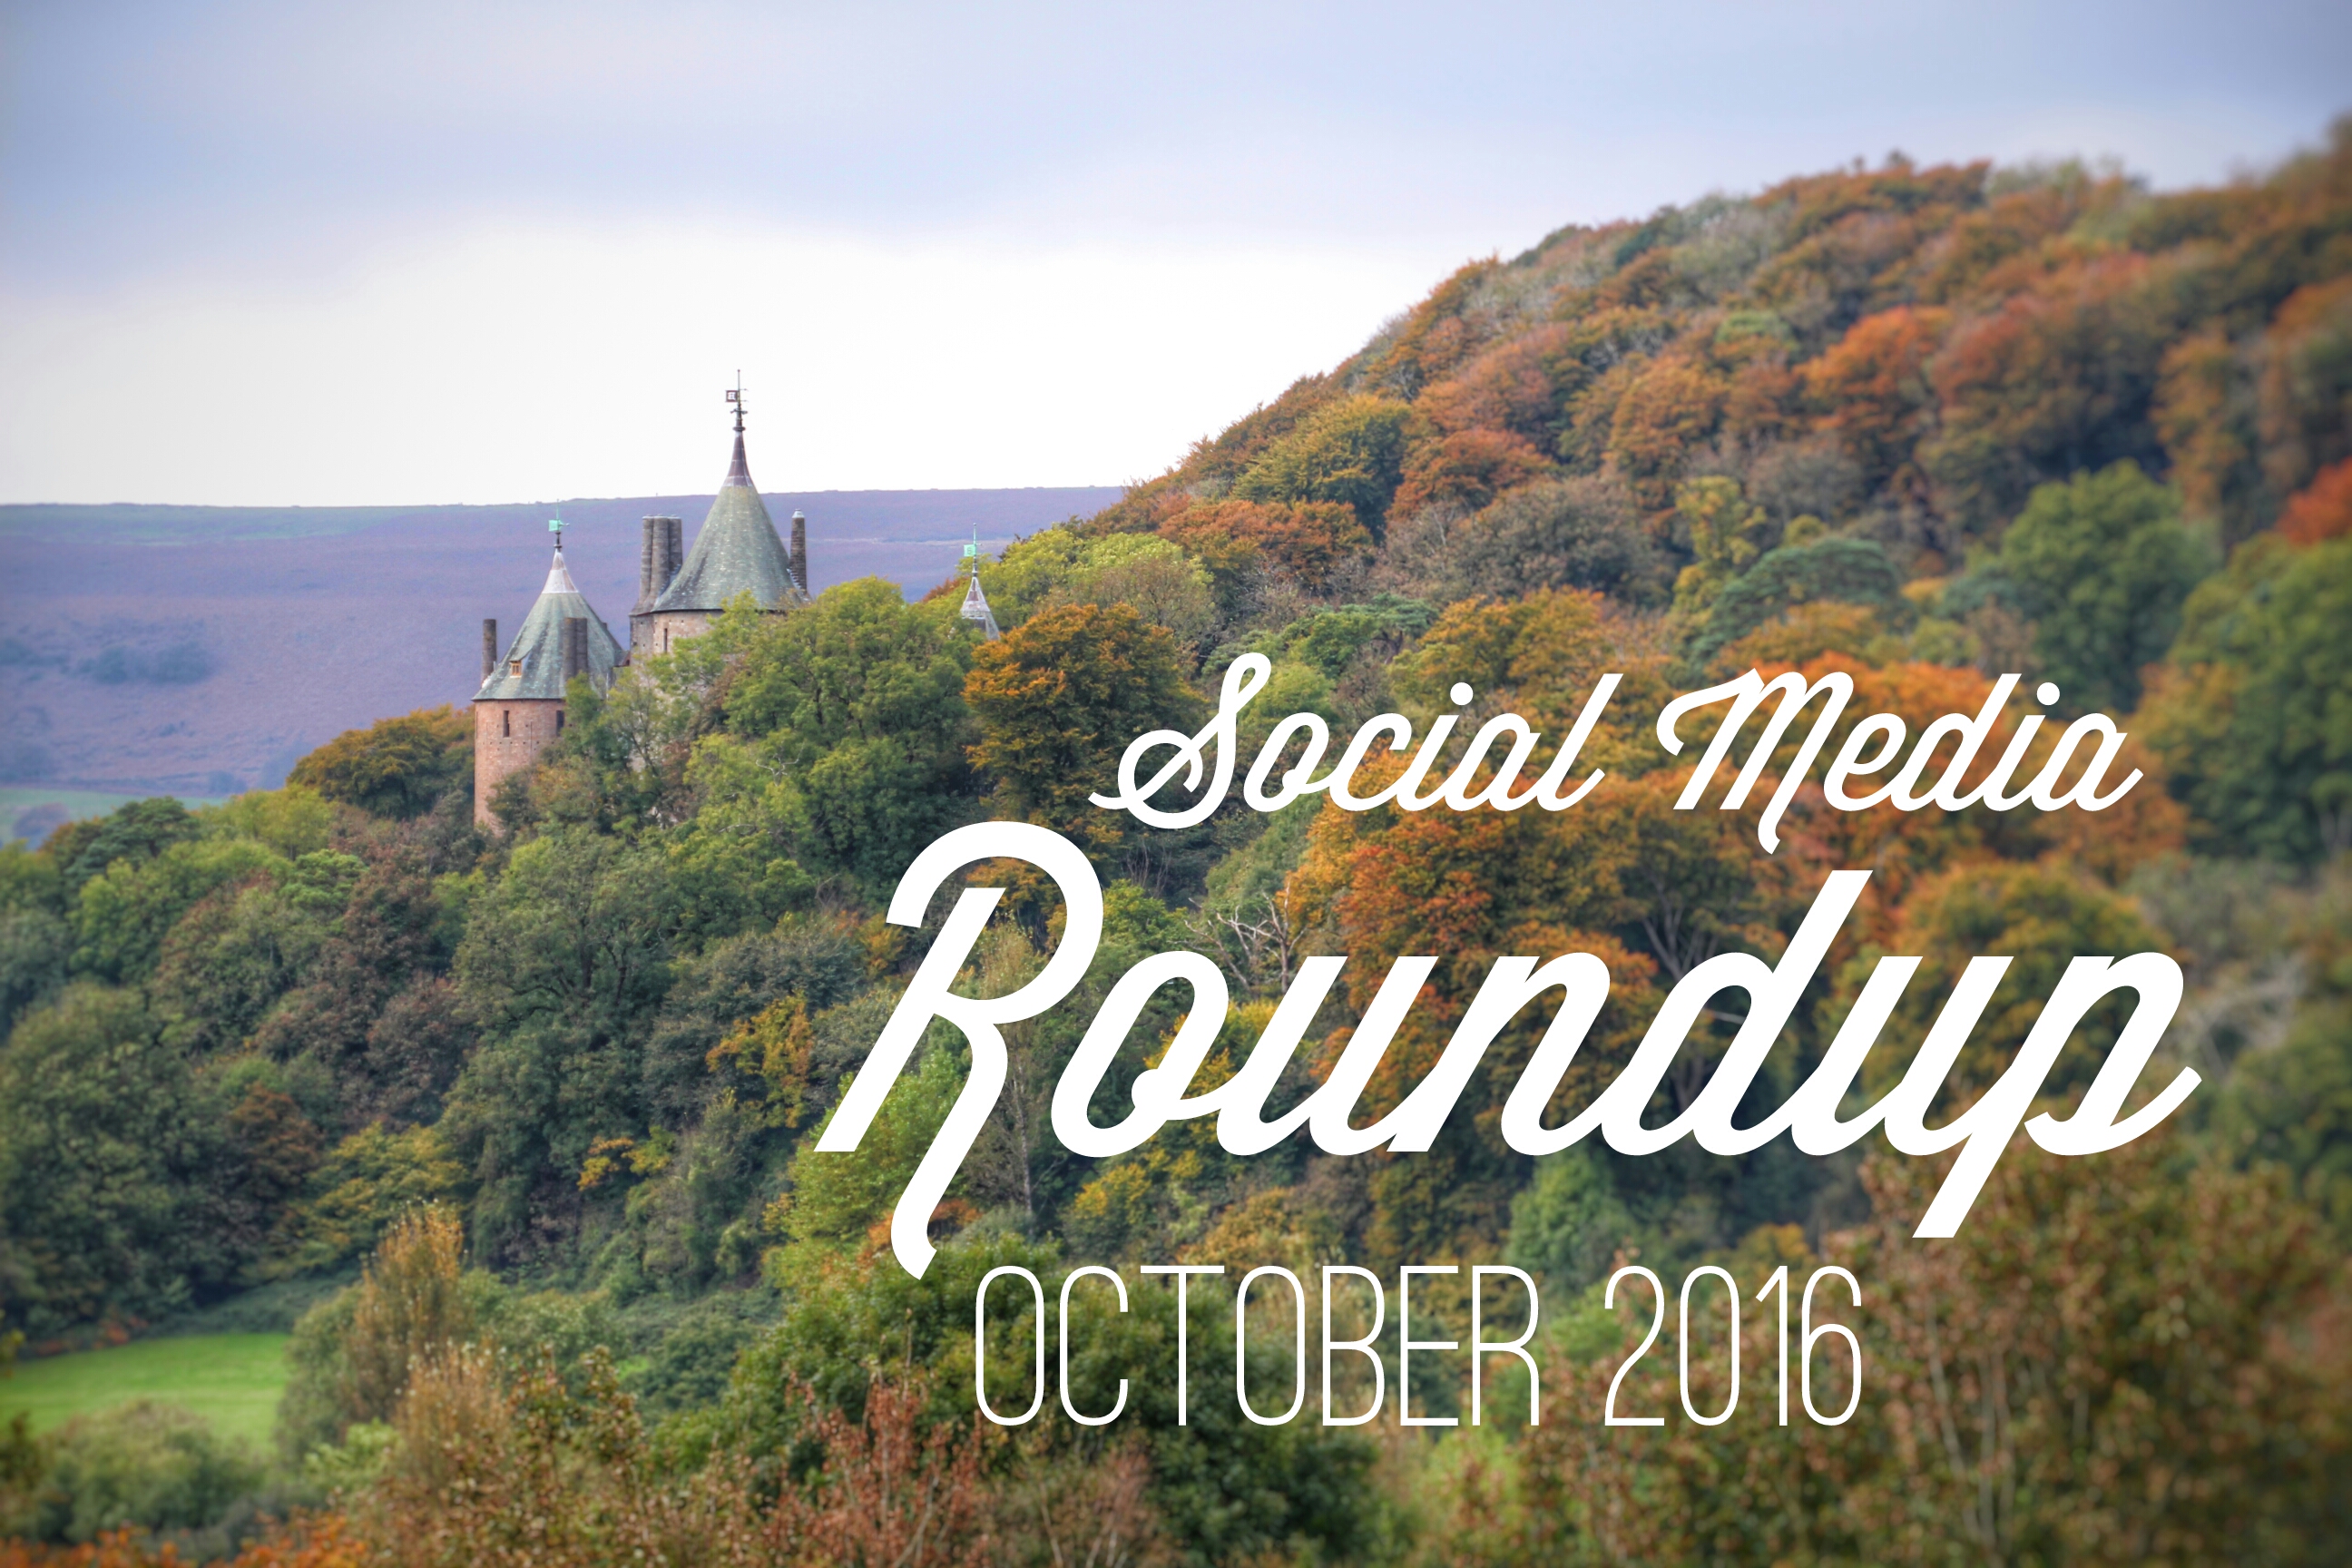 Social Media Roundup October 2016 header